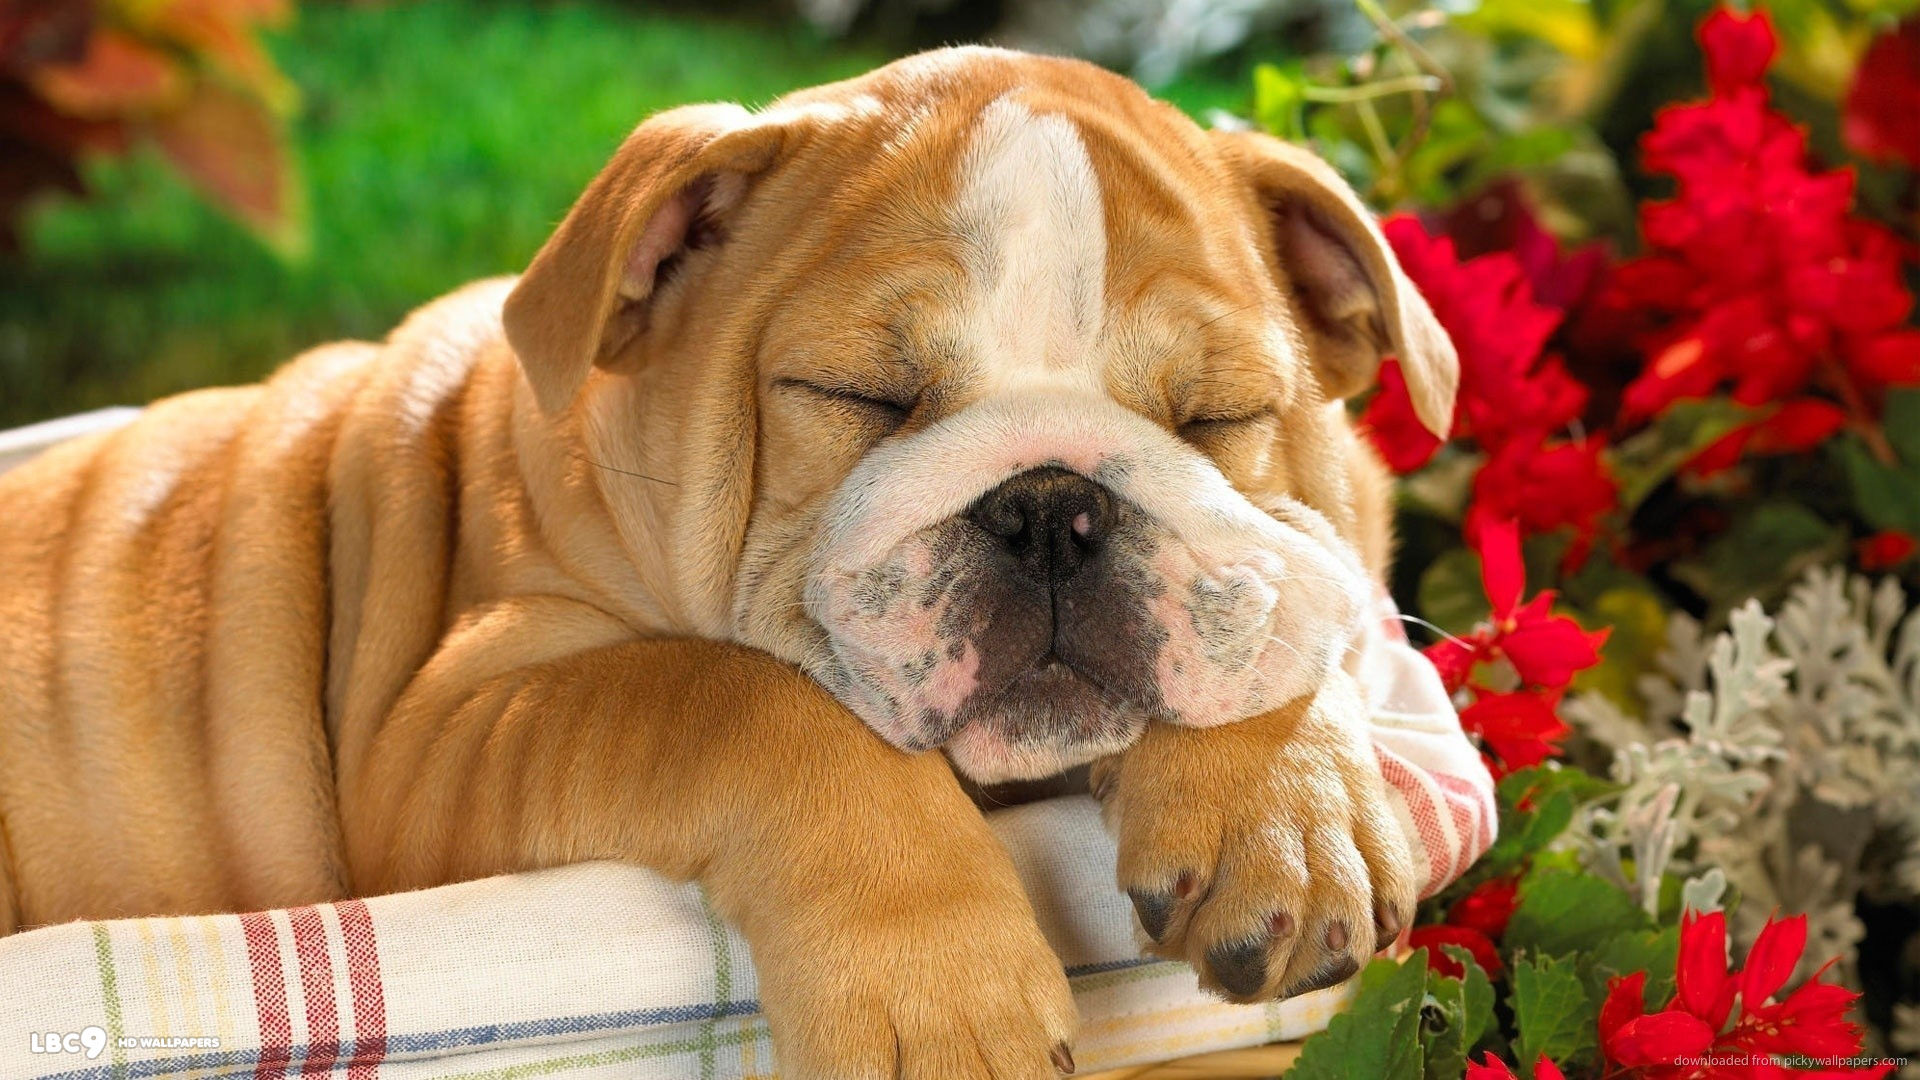 cute bulldog puppy sleeping in a basket